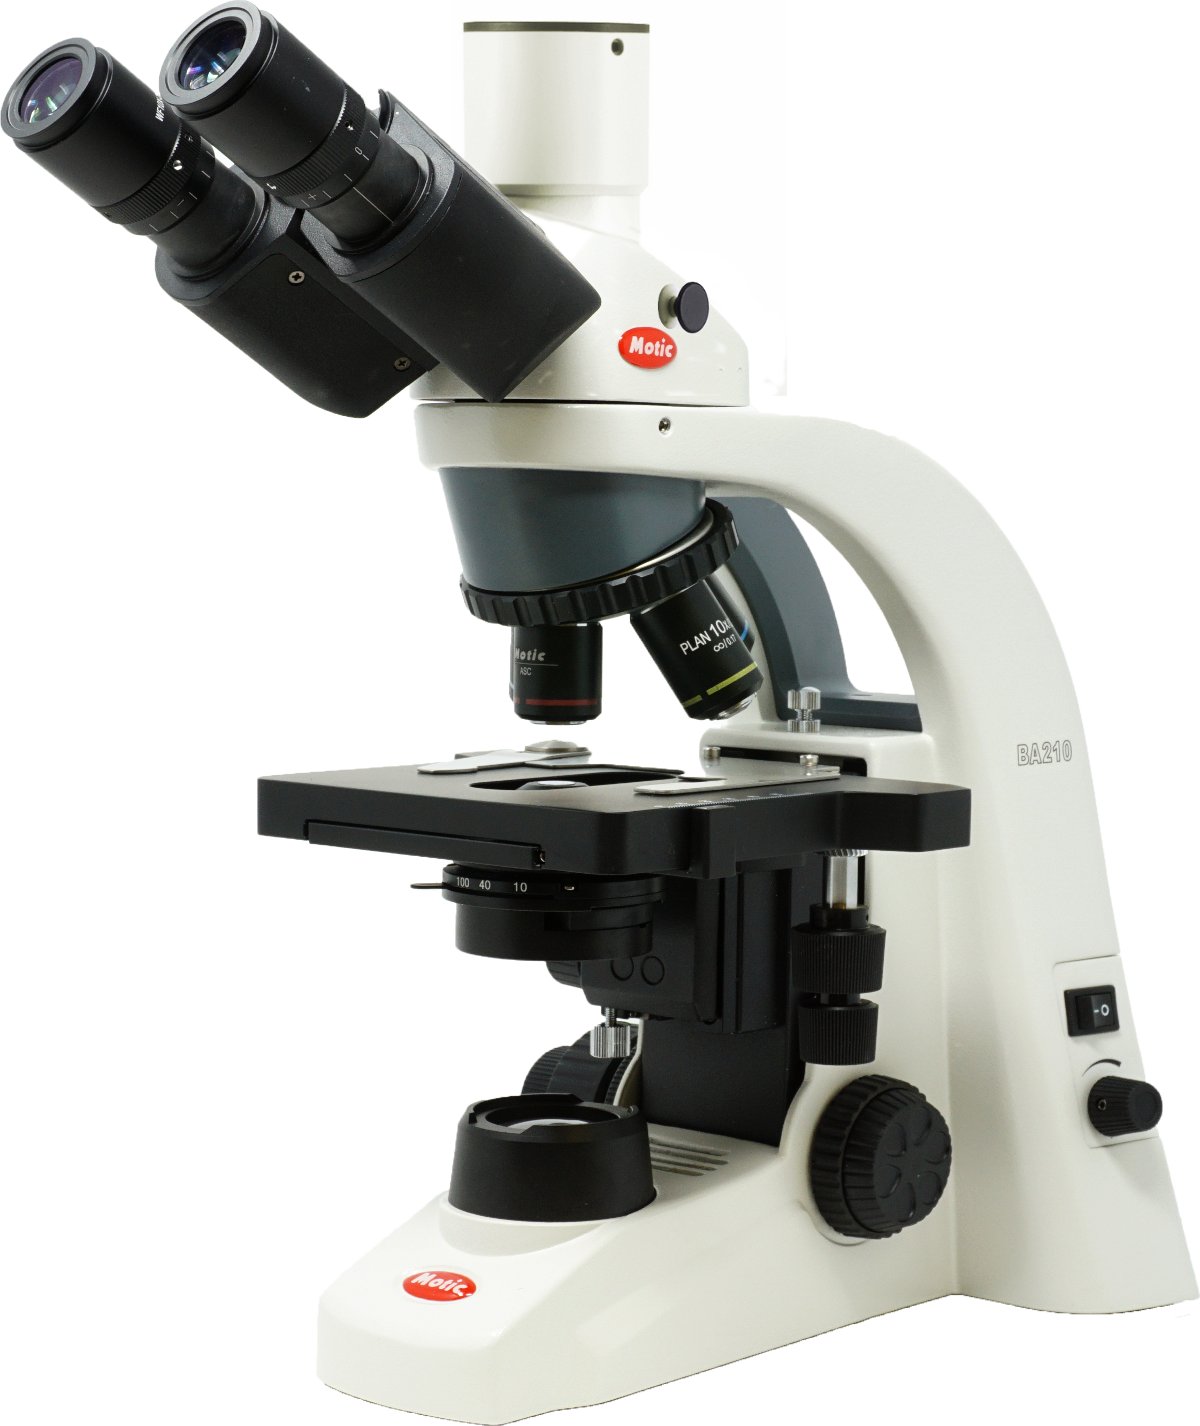 Microscopio ergonómico Trinocular c/Optica Plan Acromática Corregida a Infinito e iluminación LED BA210S LED Trinocular